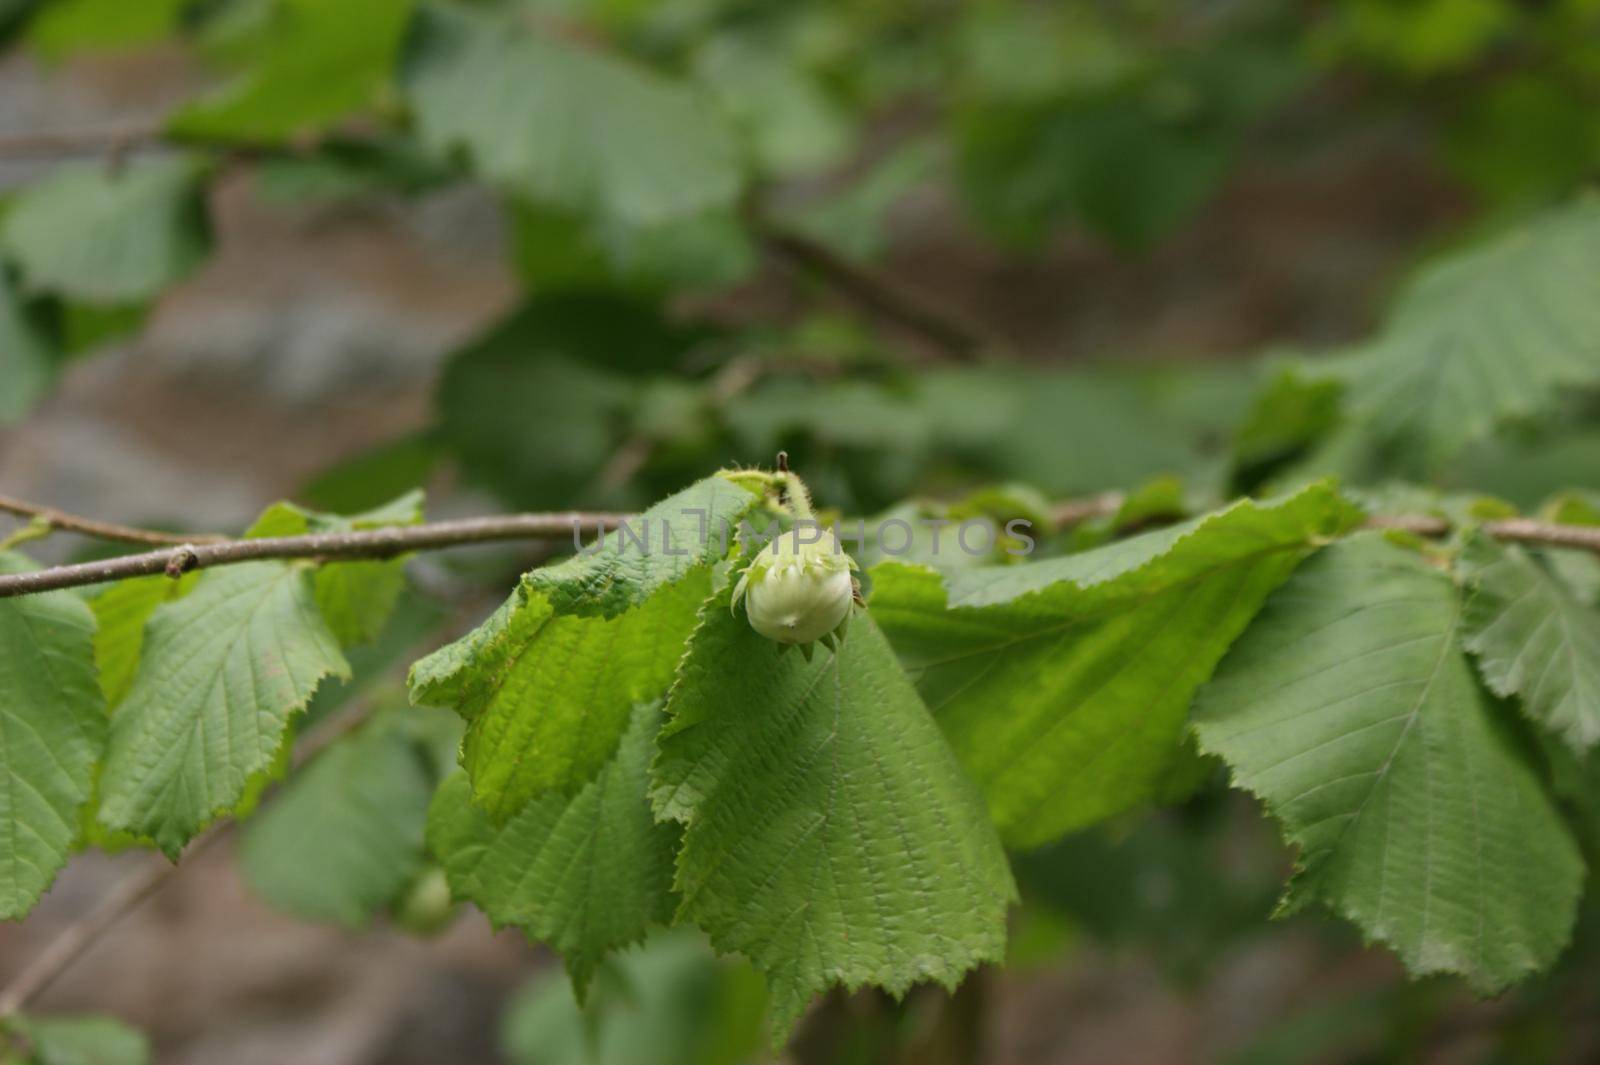 Wild unripe hazelnuts growing on a branch of a hazelnut bush tree with green leafs in summer by LeoniekvanderVliet